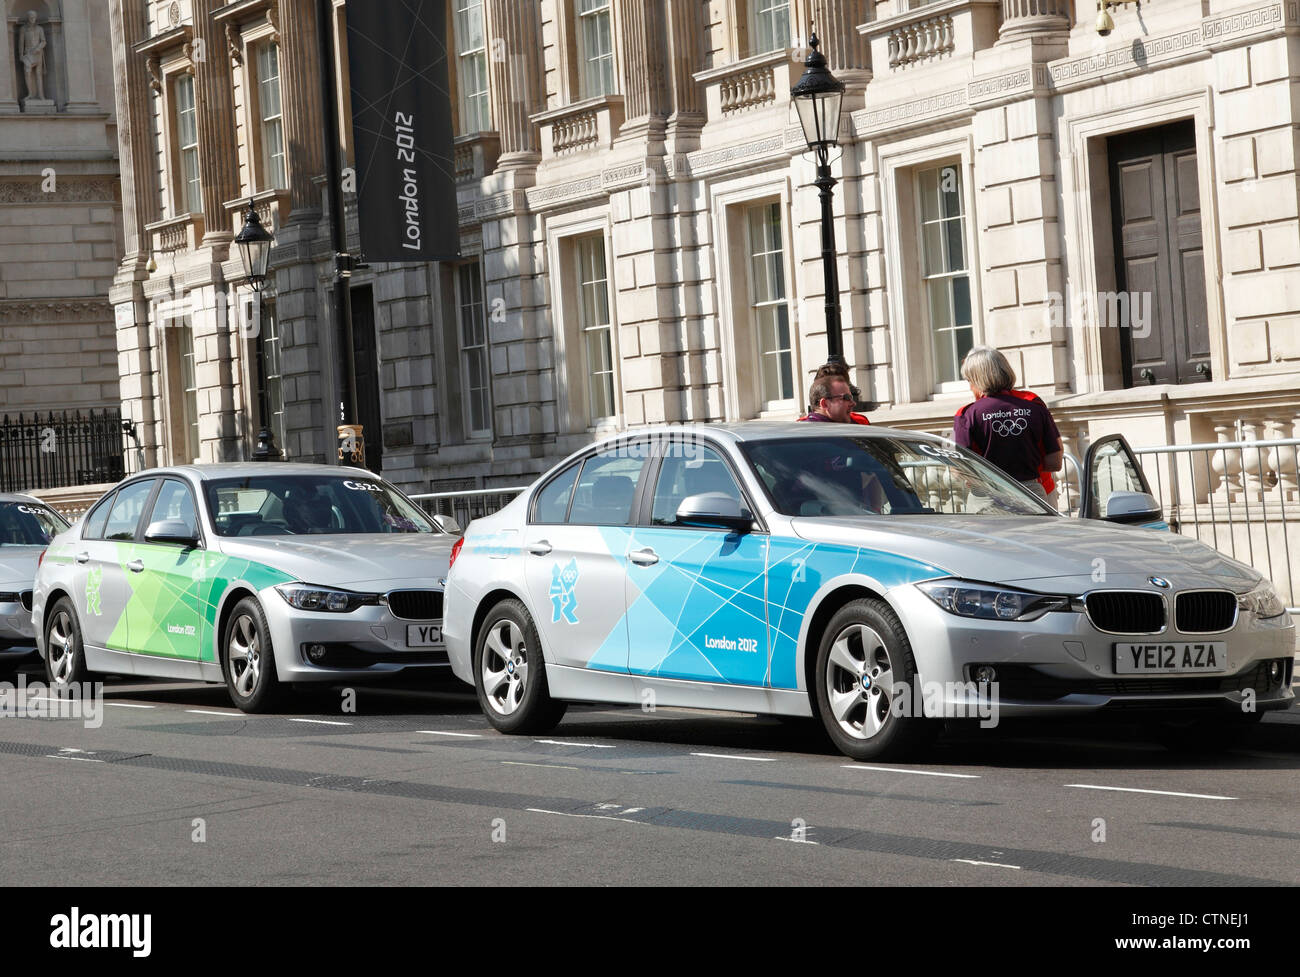 Londres 2012 Jeux olympiques officielles voitures BMW sur Whitehall, Westminster, Londres, Angleterre, Royaume-Uni Banque D'Images